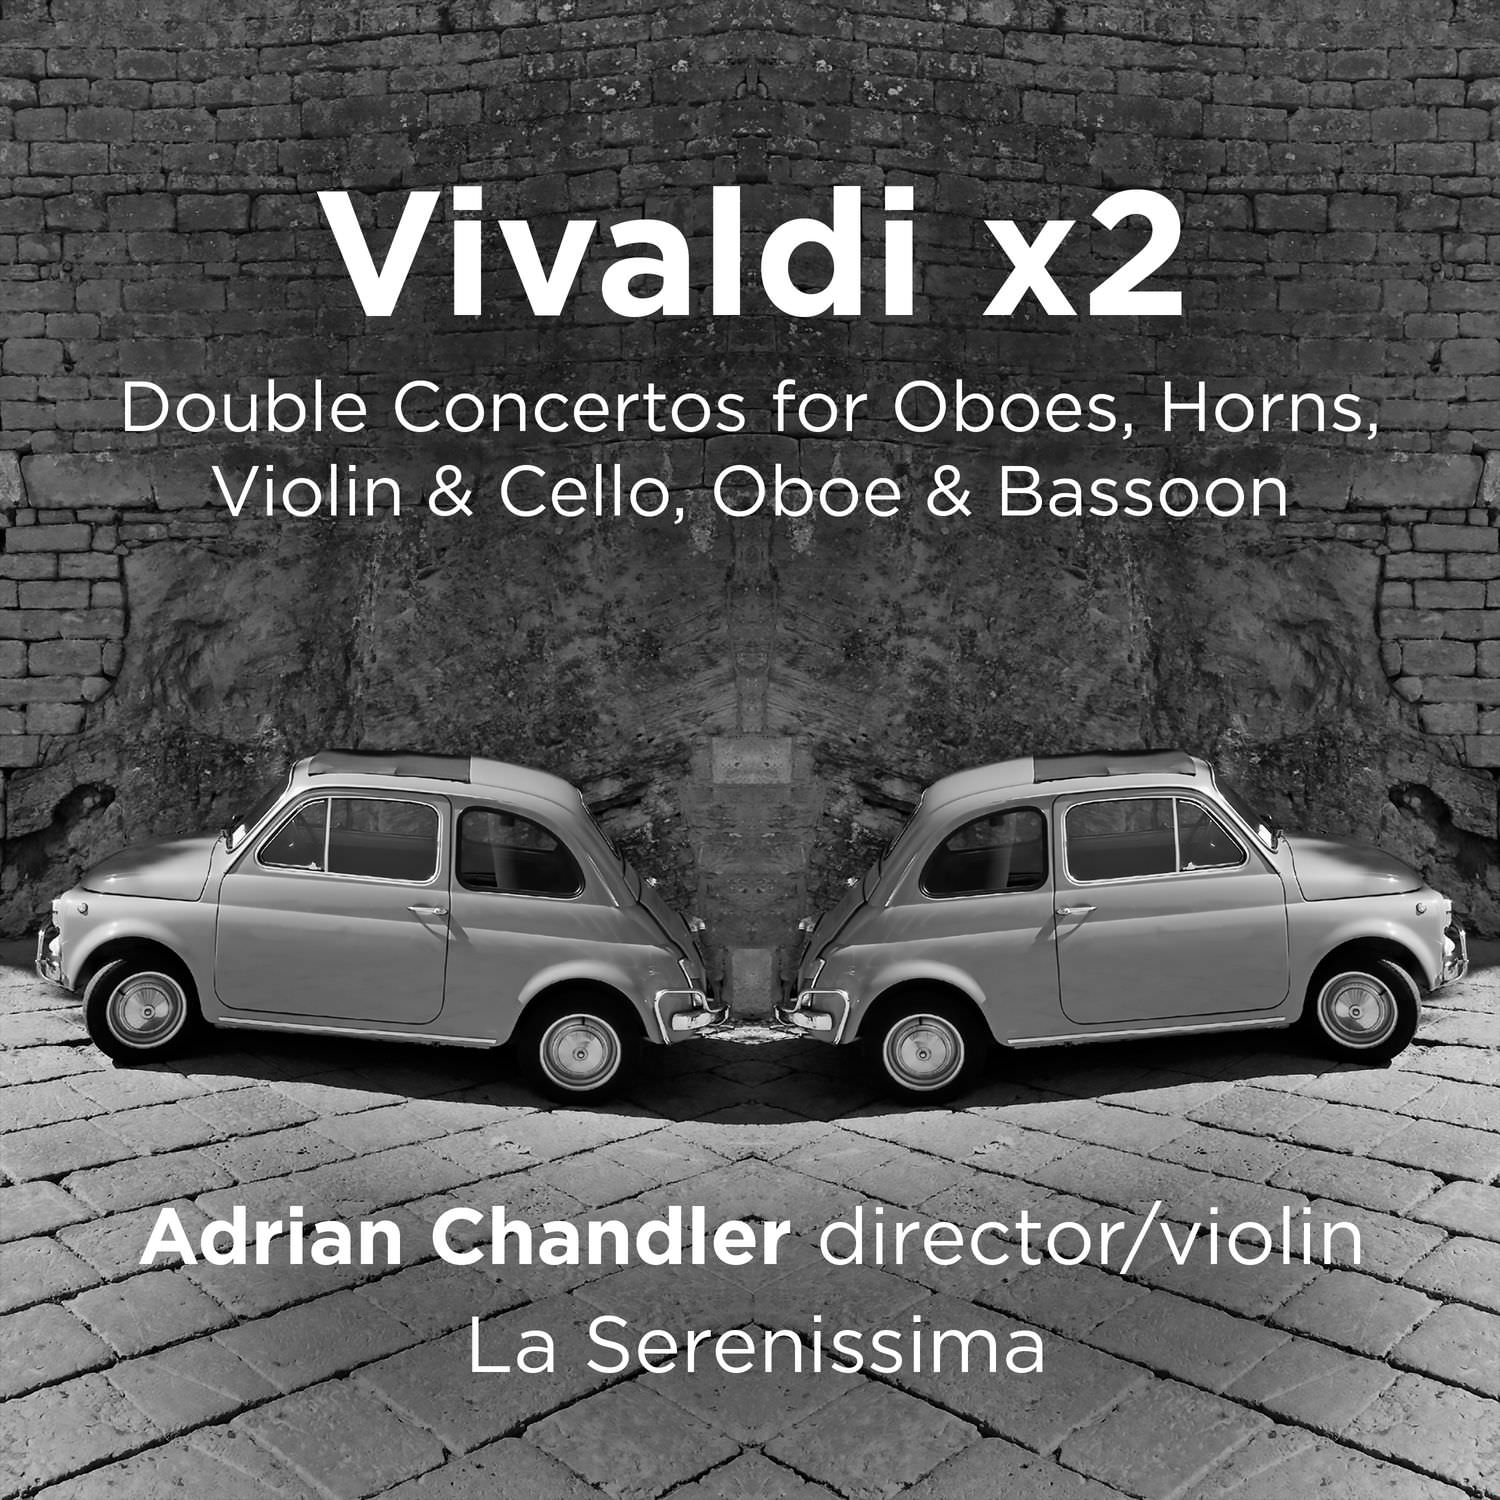 Adrian Chandler & La Serenissima - Vivaldi x2 (2018) [FLAC 24bit/96kHz]